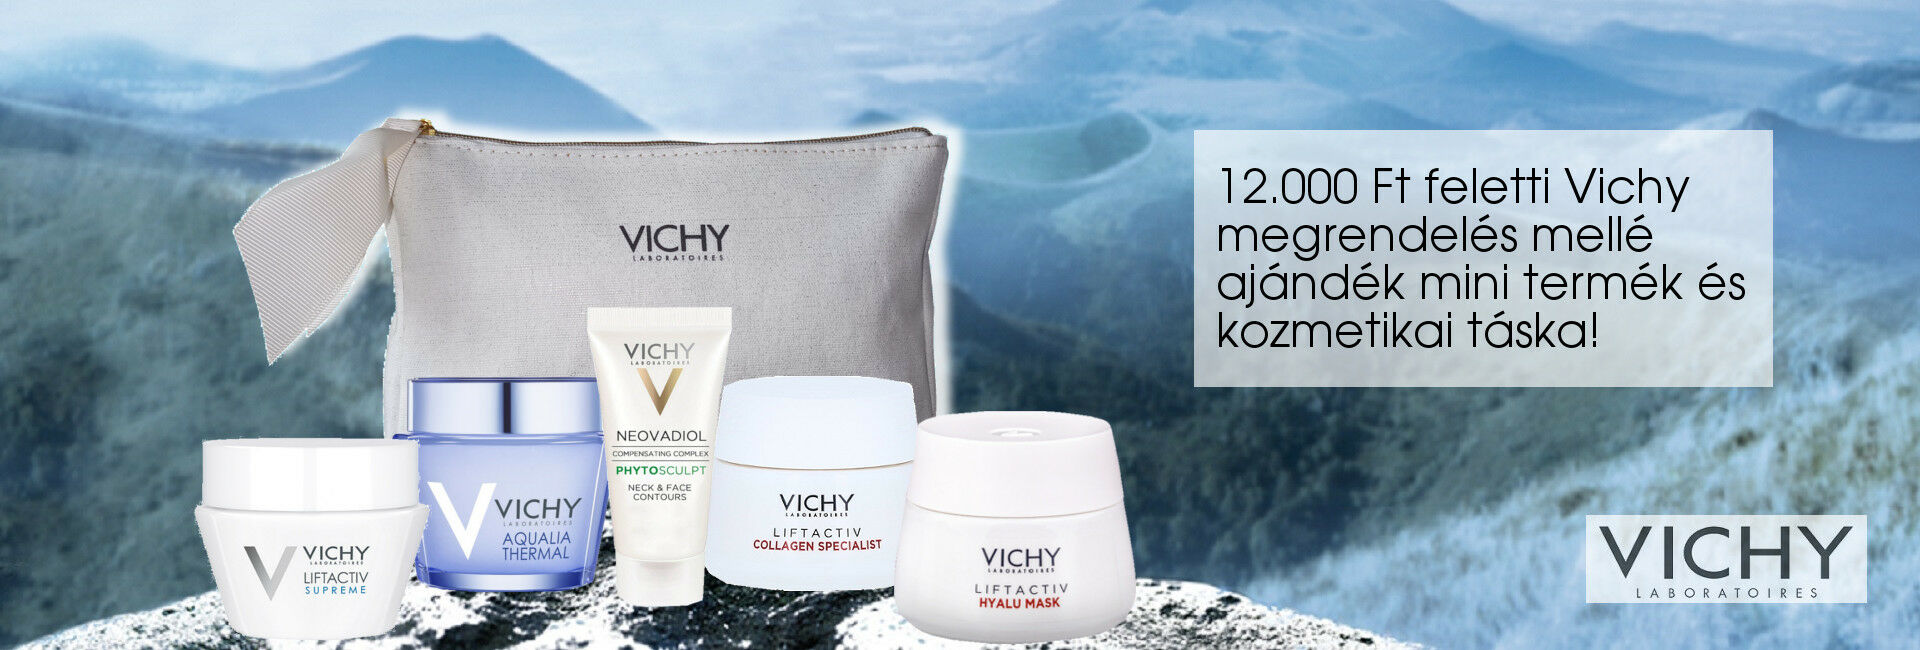 2021. február 8-15. között minden 12.000 Ft feletti Vichy megrendelés mellé választható mini Vichy arcápoló terméket és exkluzív Vichy kozmetikai táskát adunk ajándékba!